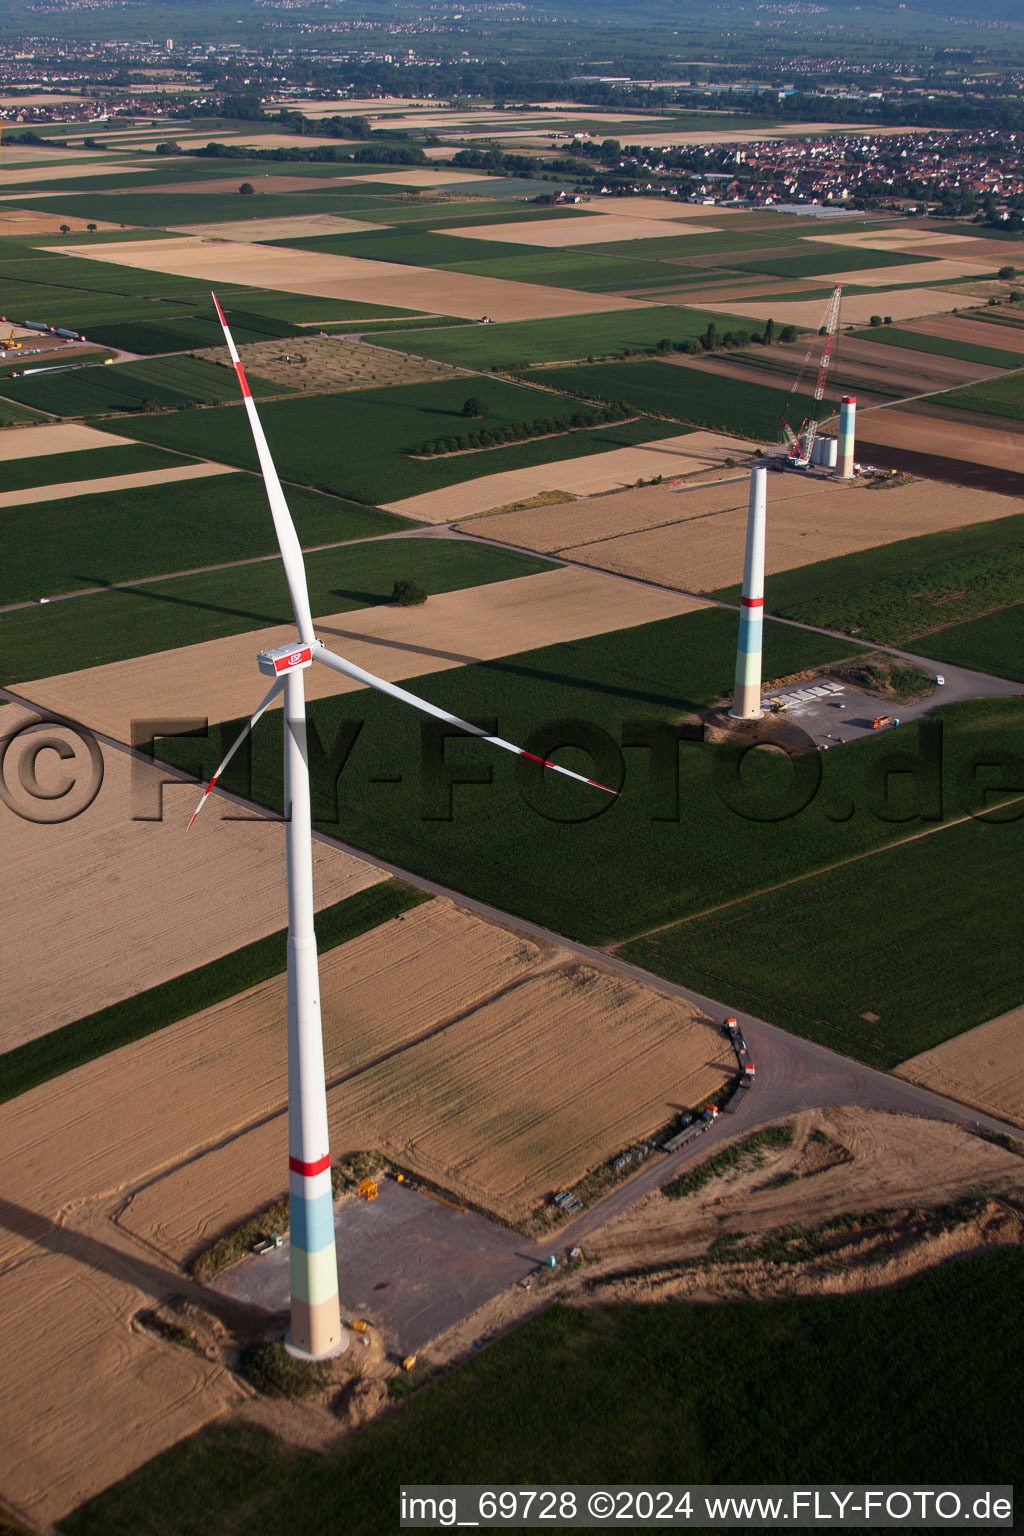 Construction de parc éolien à Offenbach an der Queich dans le département Rhénanie-Palatinat, Allemagne vue du ciel